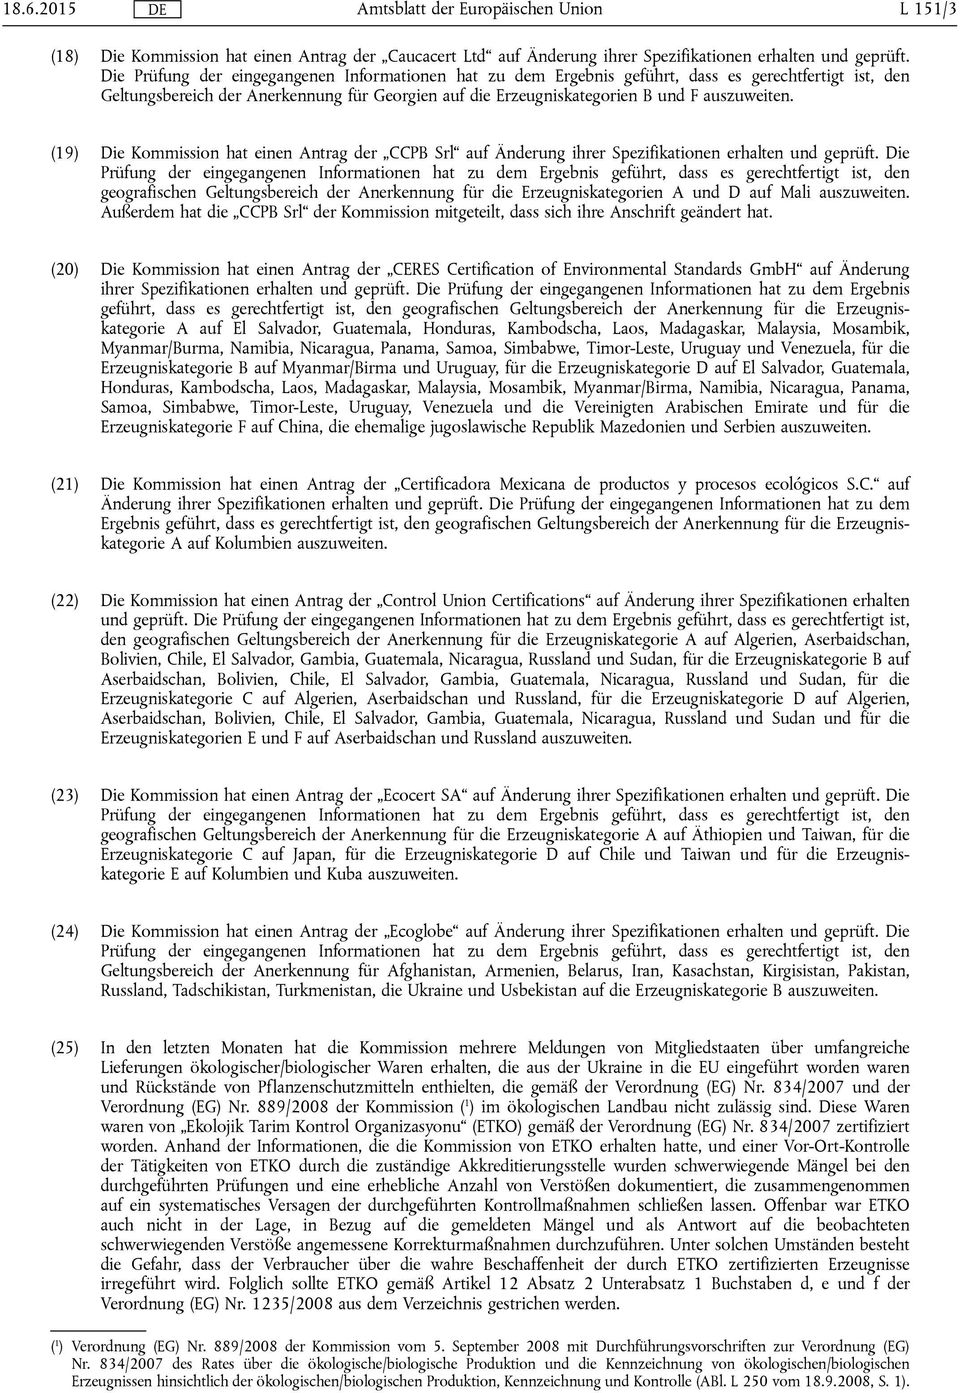 (19) Die Kommission hat einen Antrag der CCPB Srl auf Änderung ihrer Spezifikationen erhalten und geprüft.